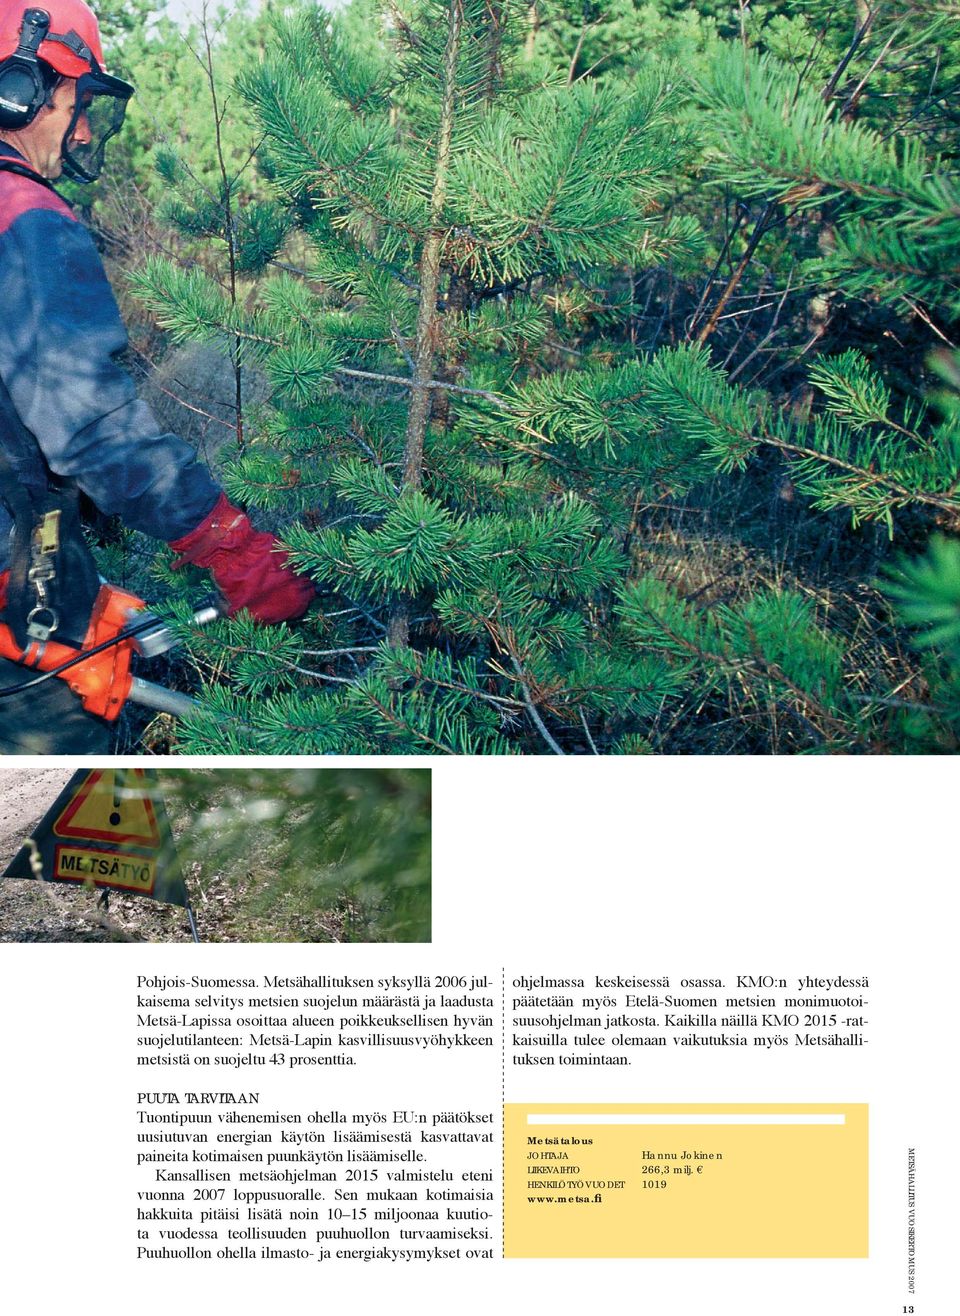 metsistä on suojeltu 43 prosenttia. ohjelmassa keskeisessä osassa. KMO:n yhteydessä päätetään myös Etelä-Suomen metsien monimuotoisuusohjelman jatkosta.